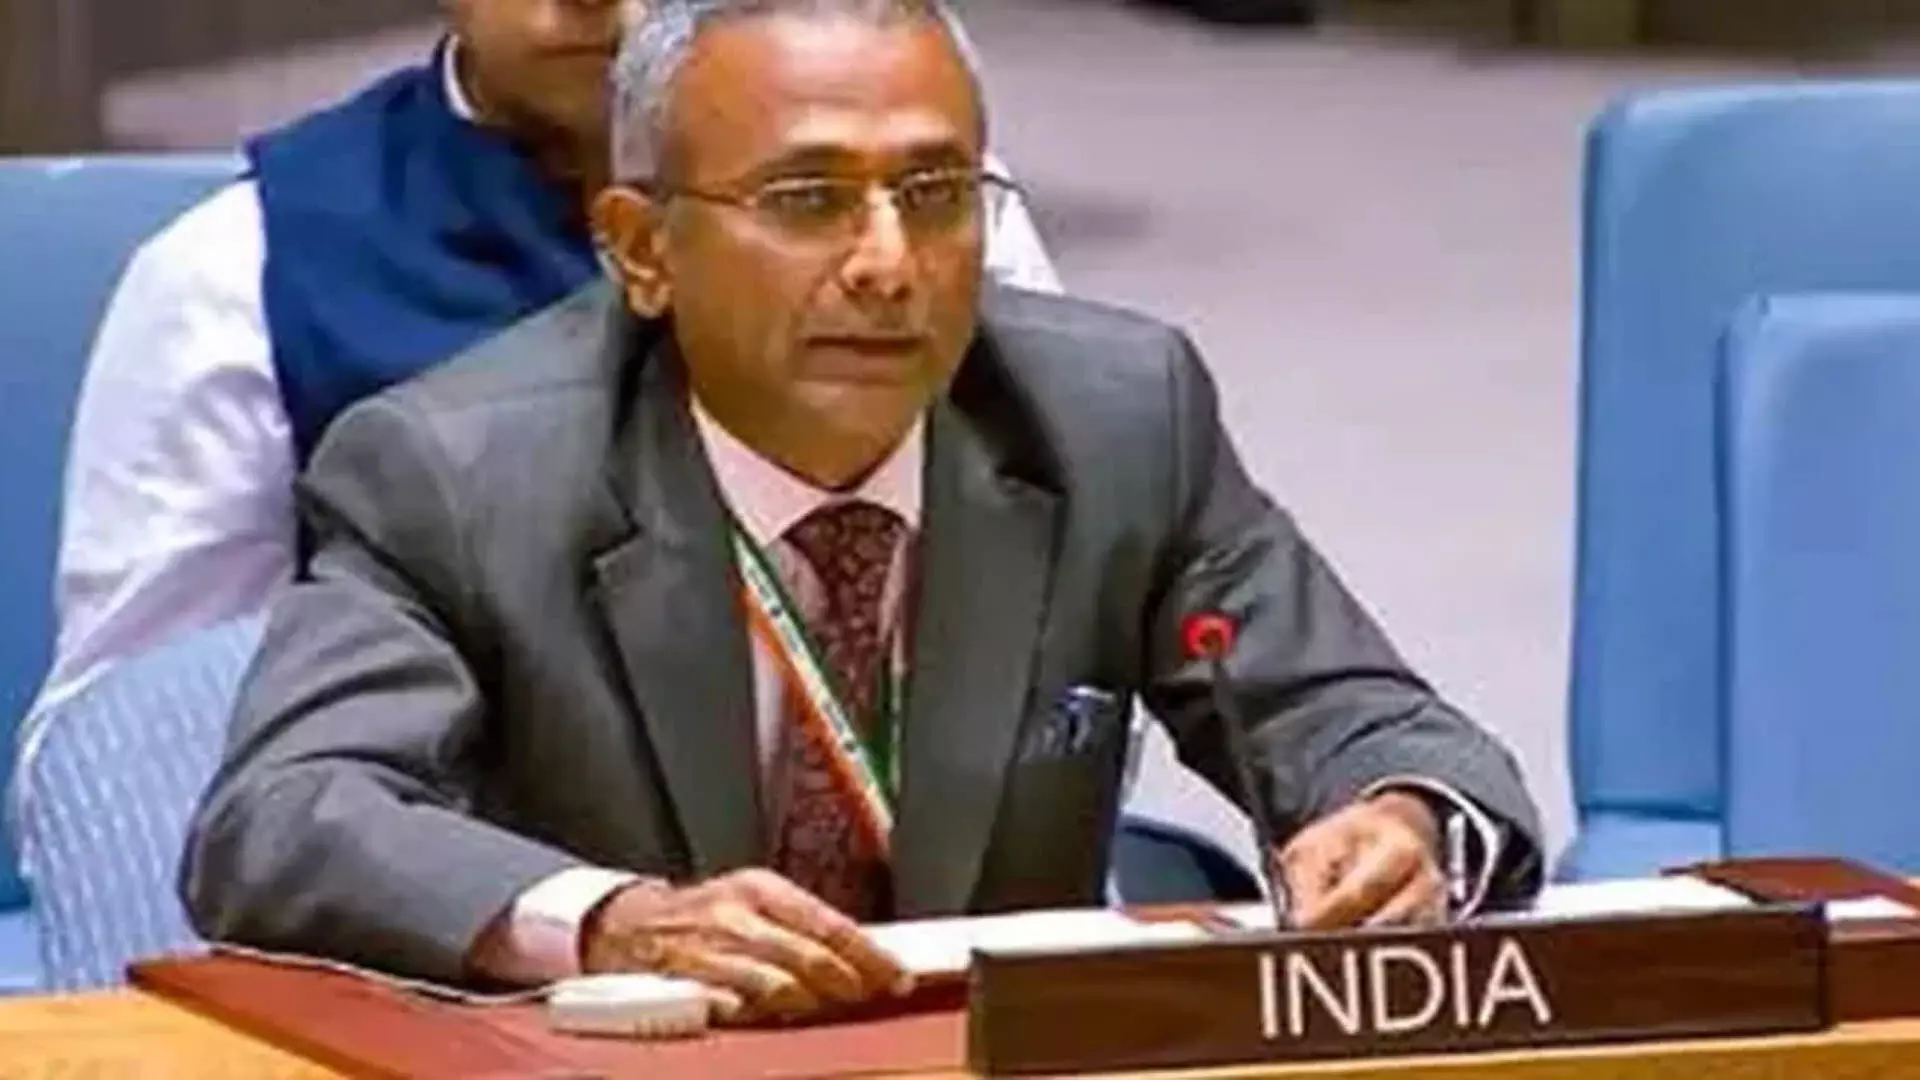 India at the United Nations: आतंकवाद के खिलाफ लड़ाई में दोहरे मापदंड त्यागने की जरूरत